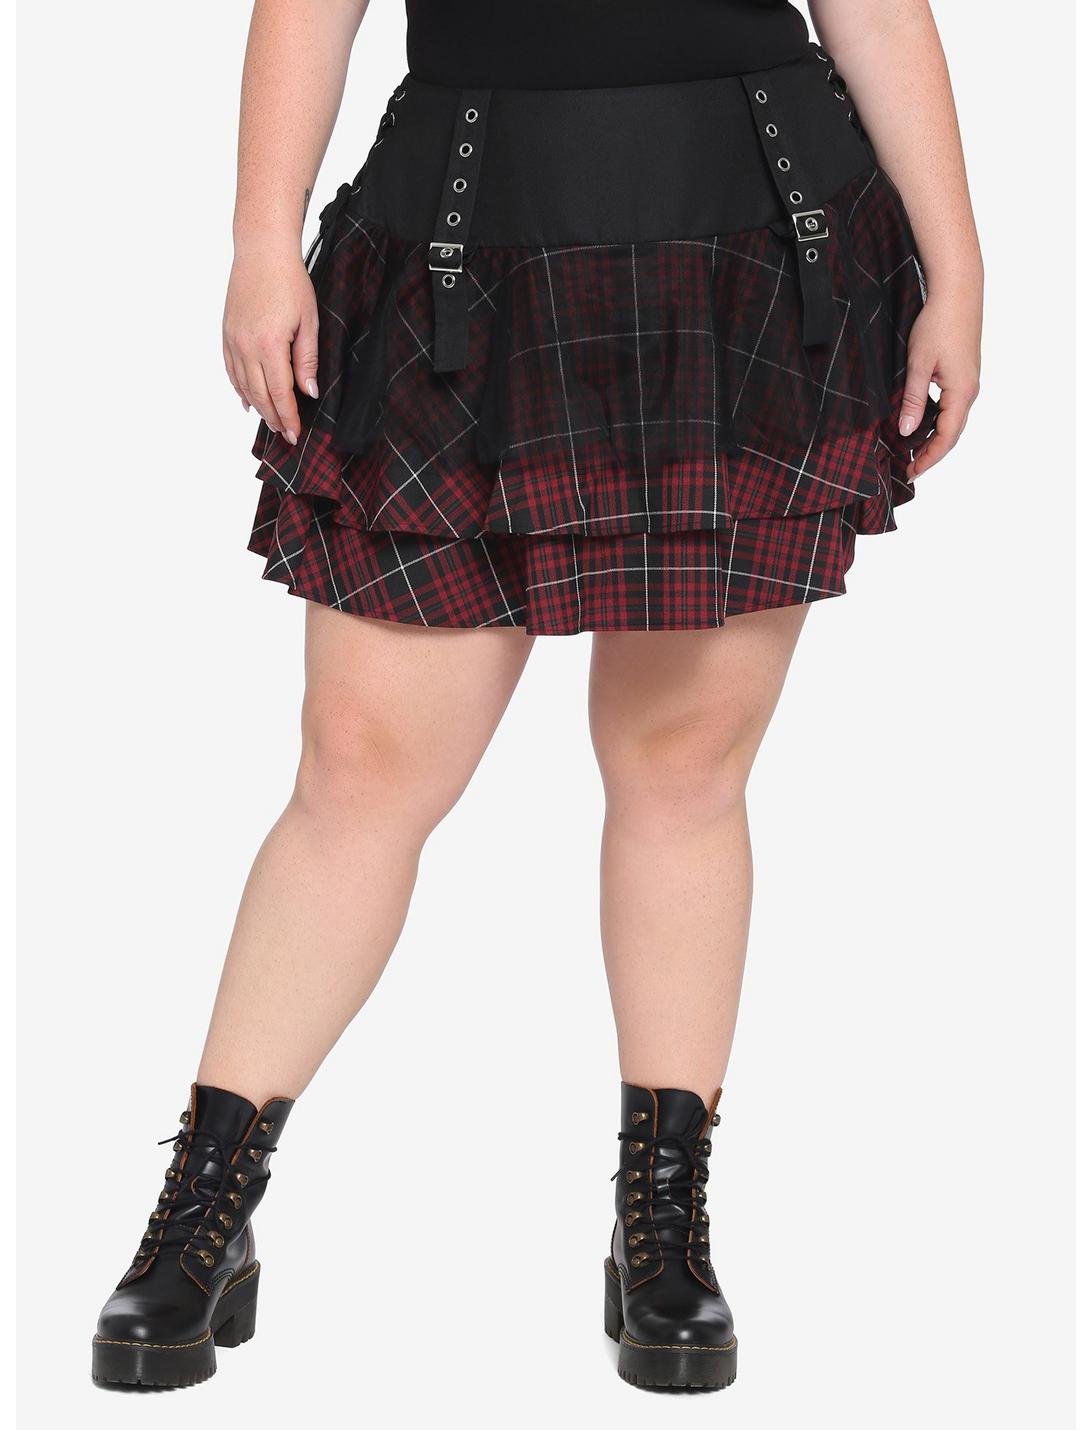 Maroon Plaid Yoke Skirt Plus Size, PLAID, hi-res